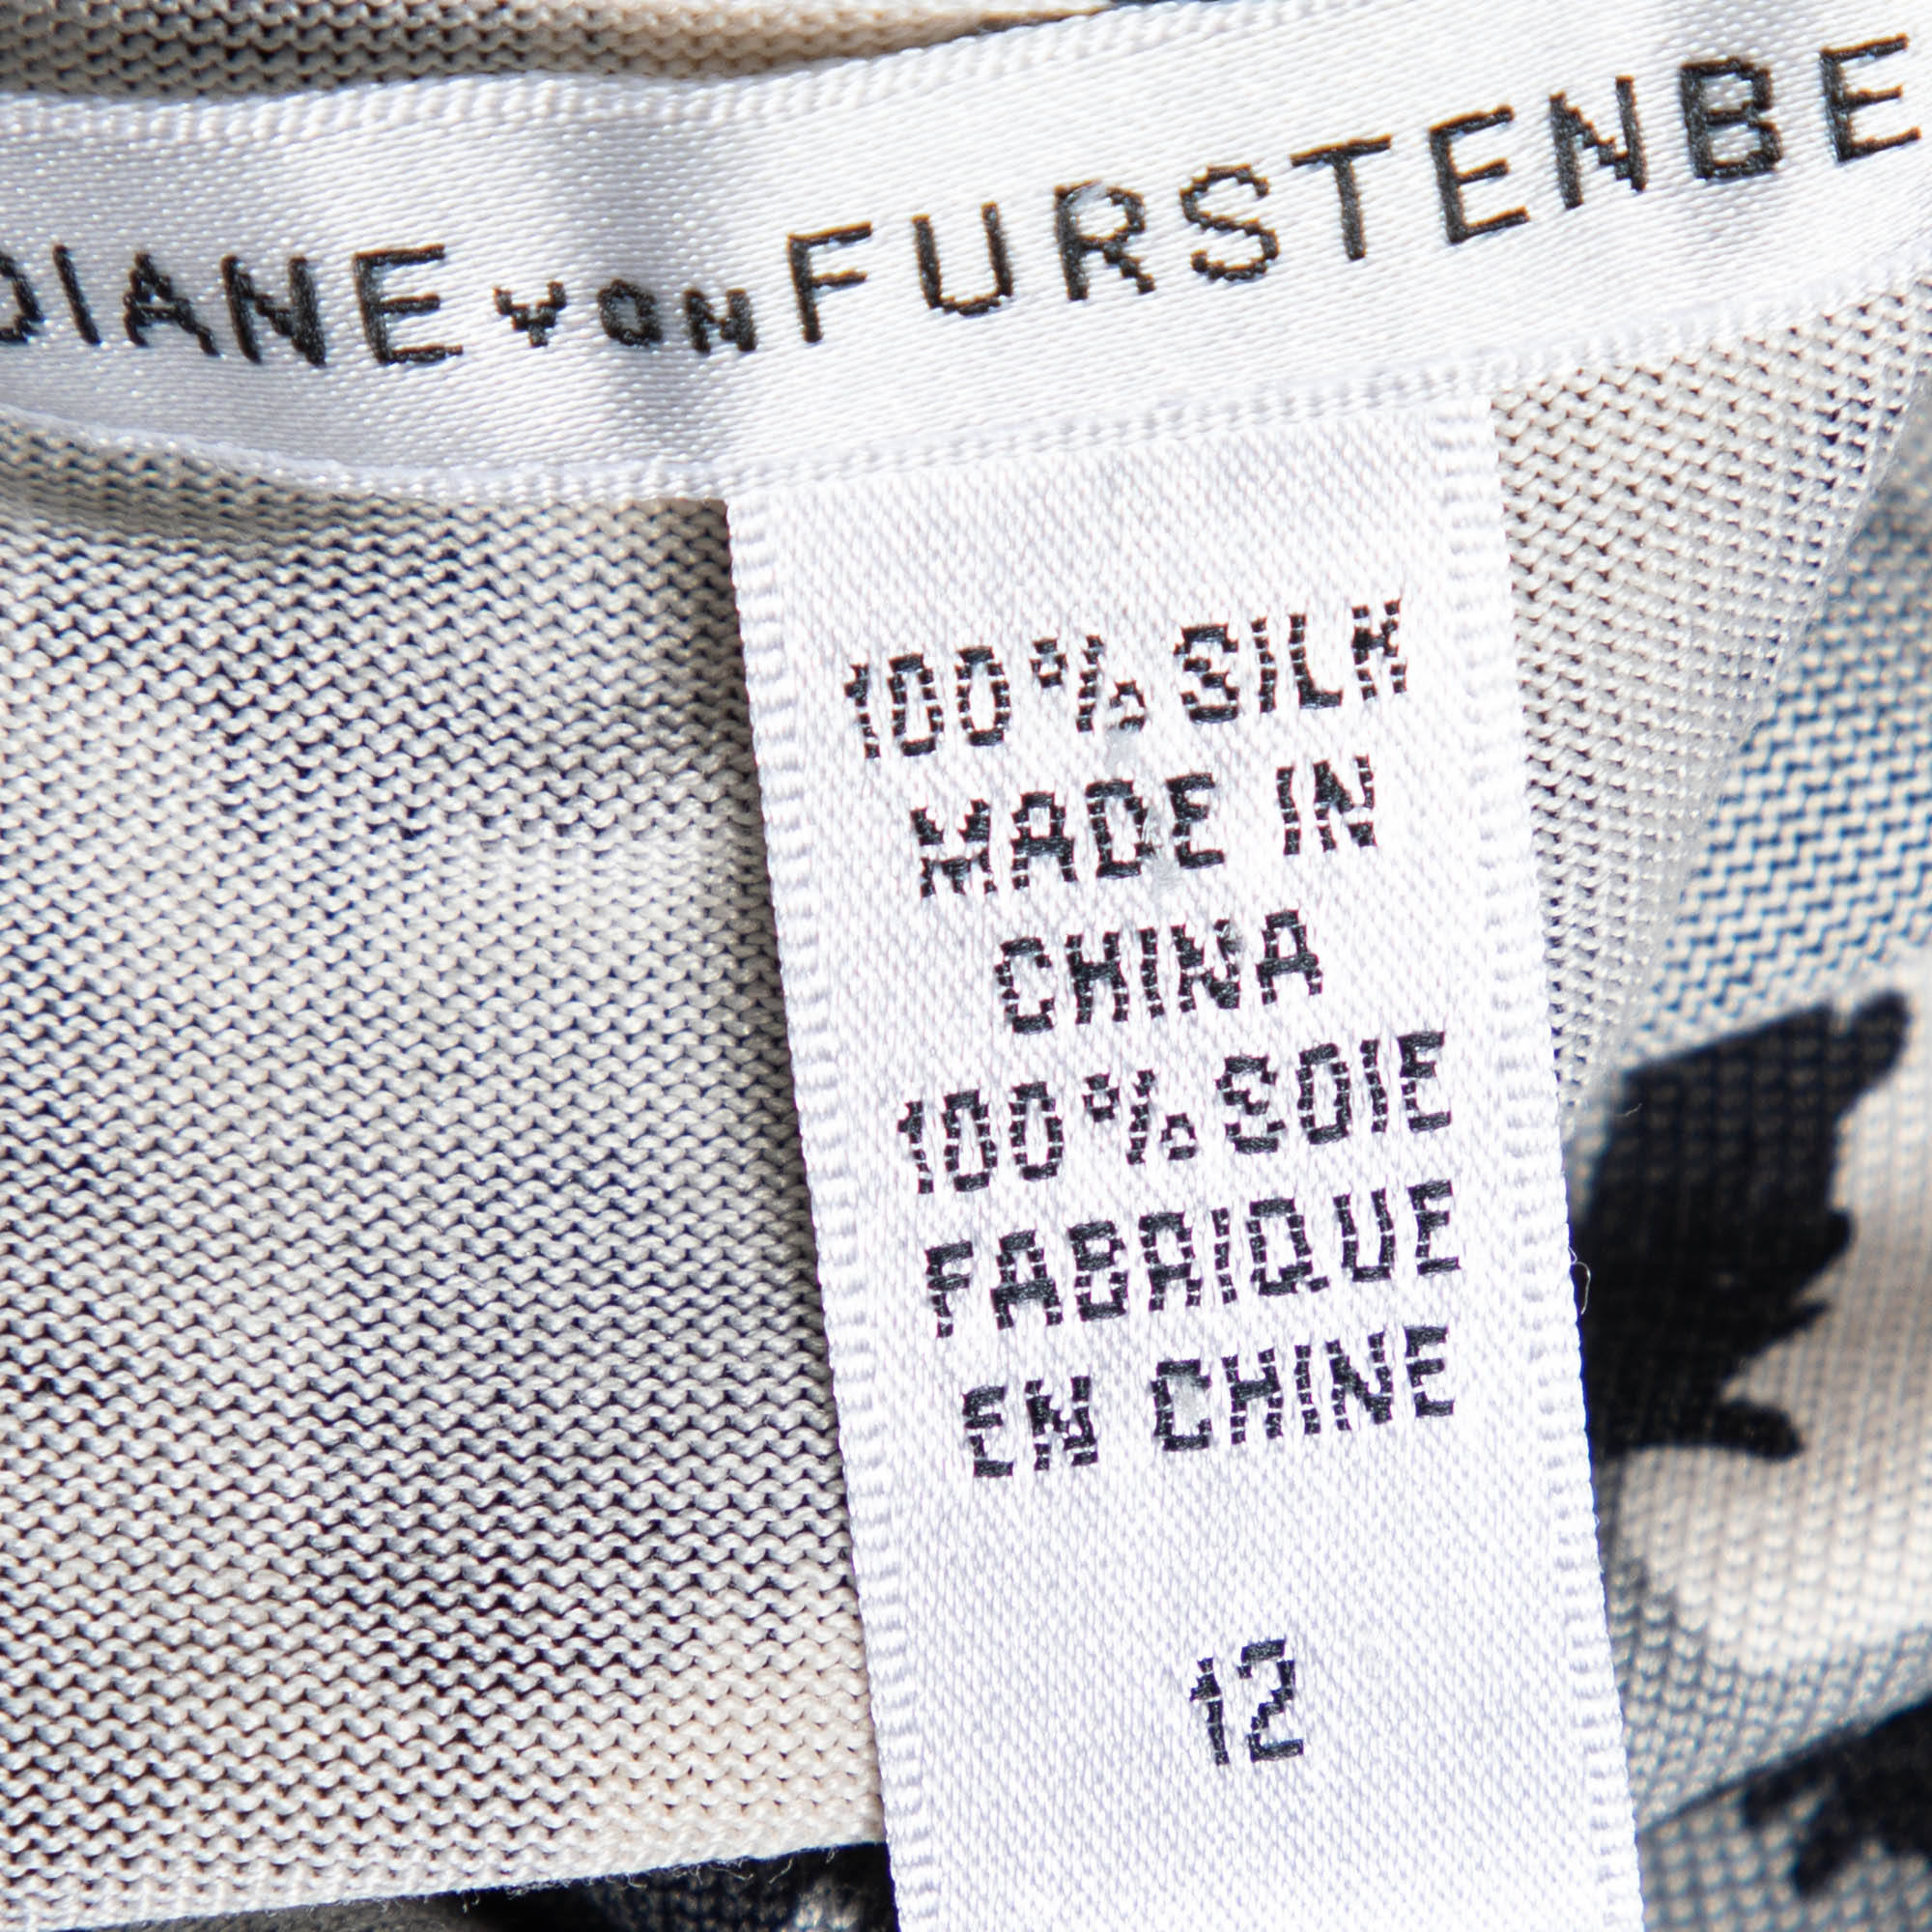 Diane Von Furstenberg Grey Animal Printed Silk Knit Ritanna Sleeveless Dress L